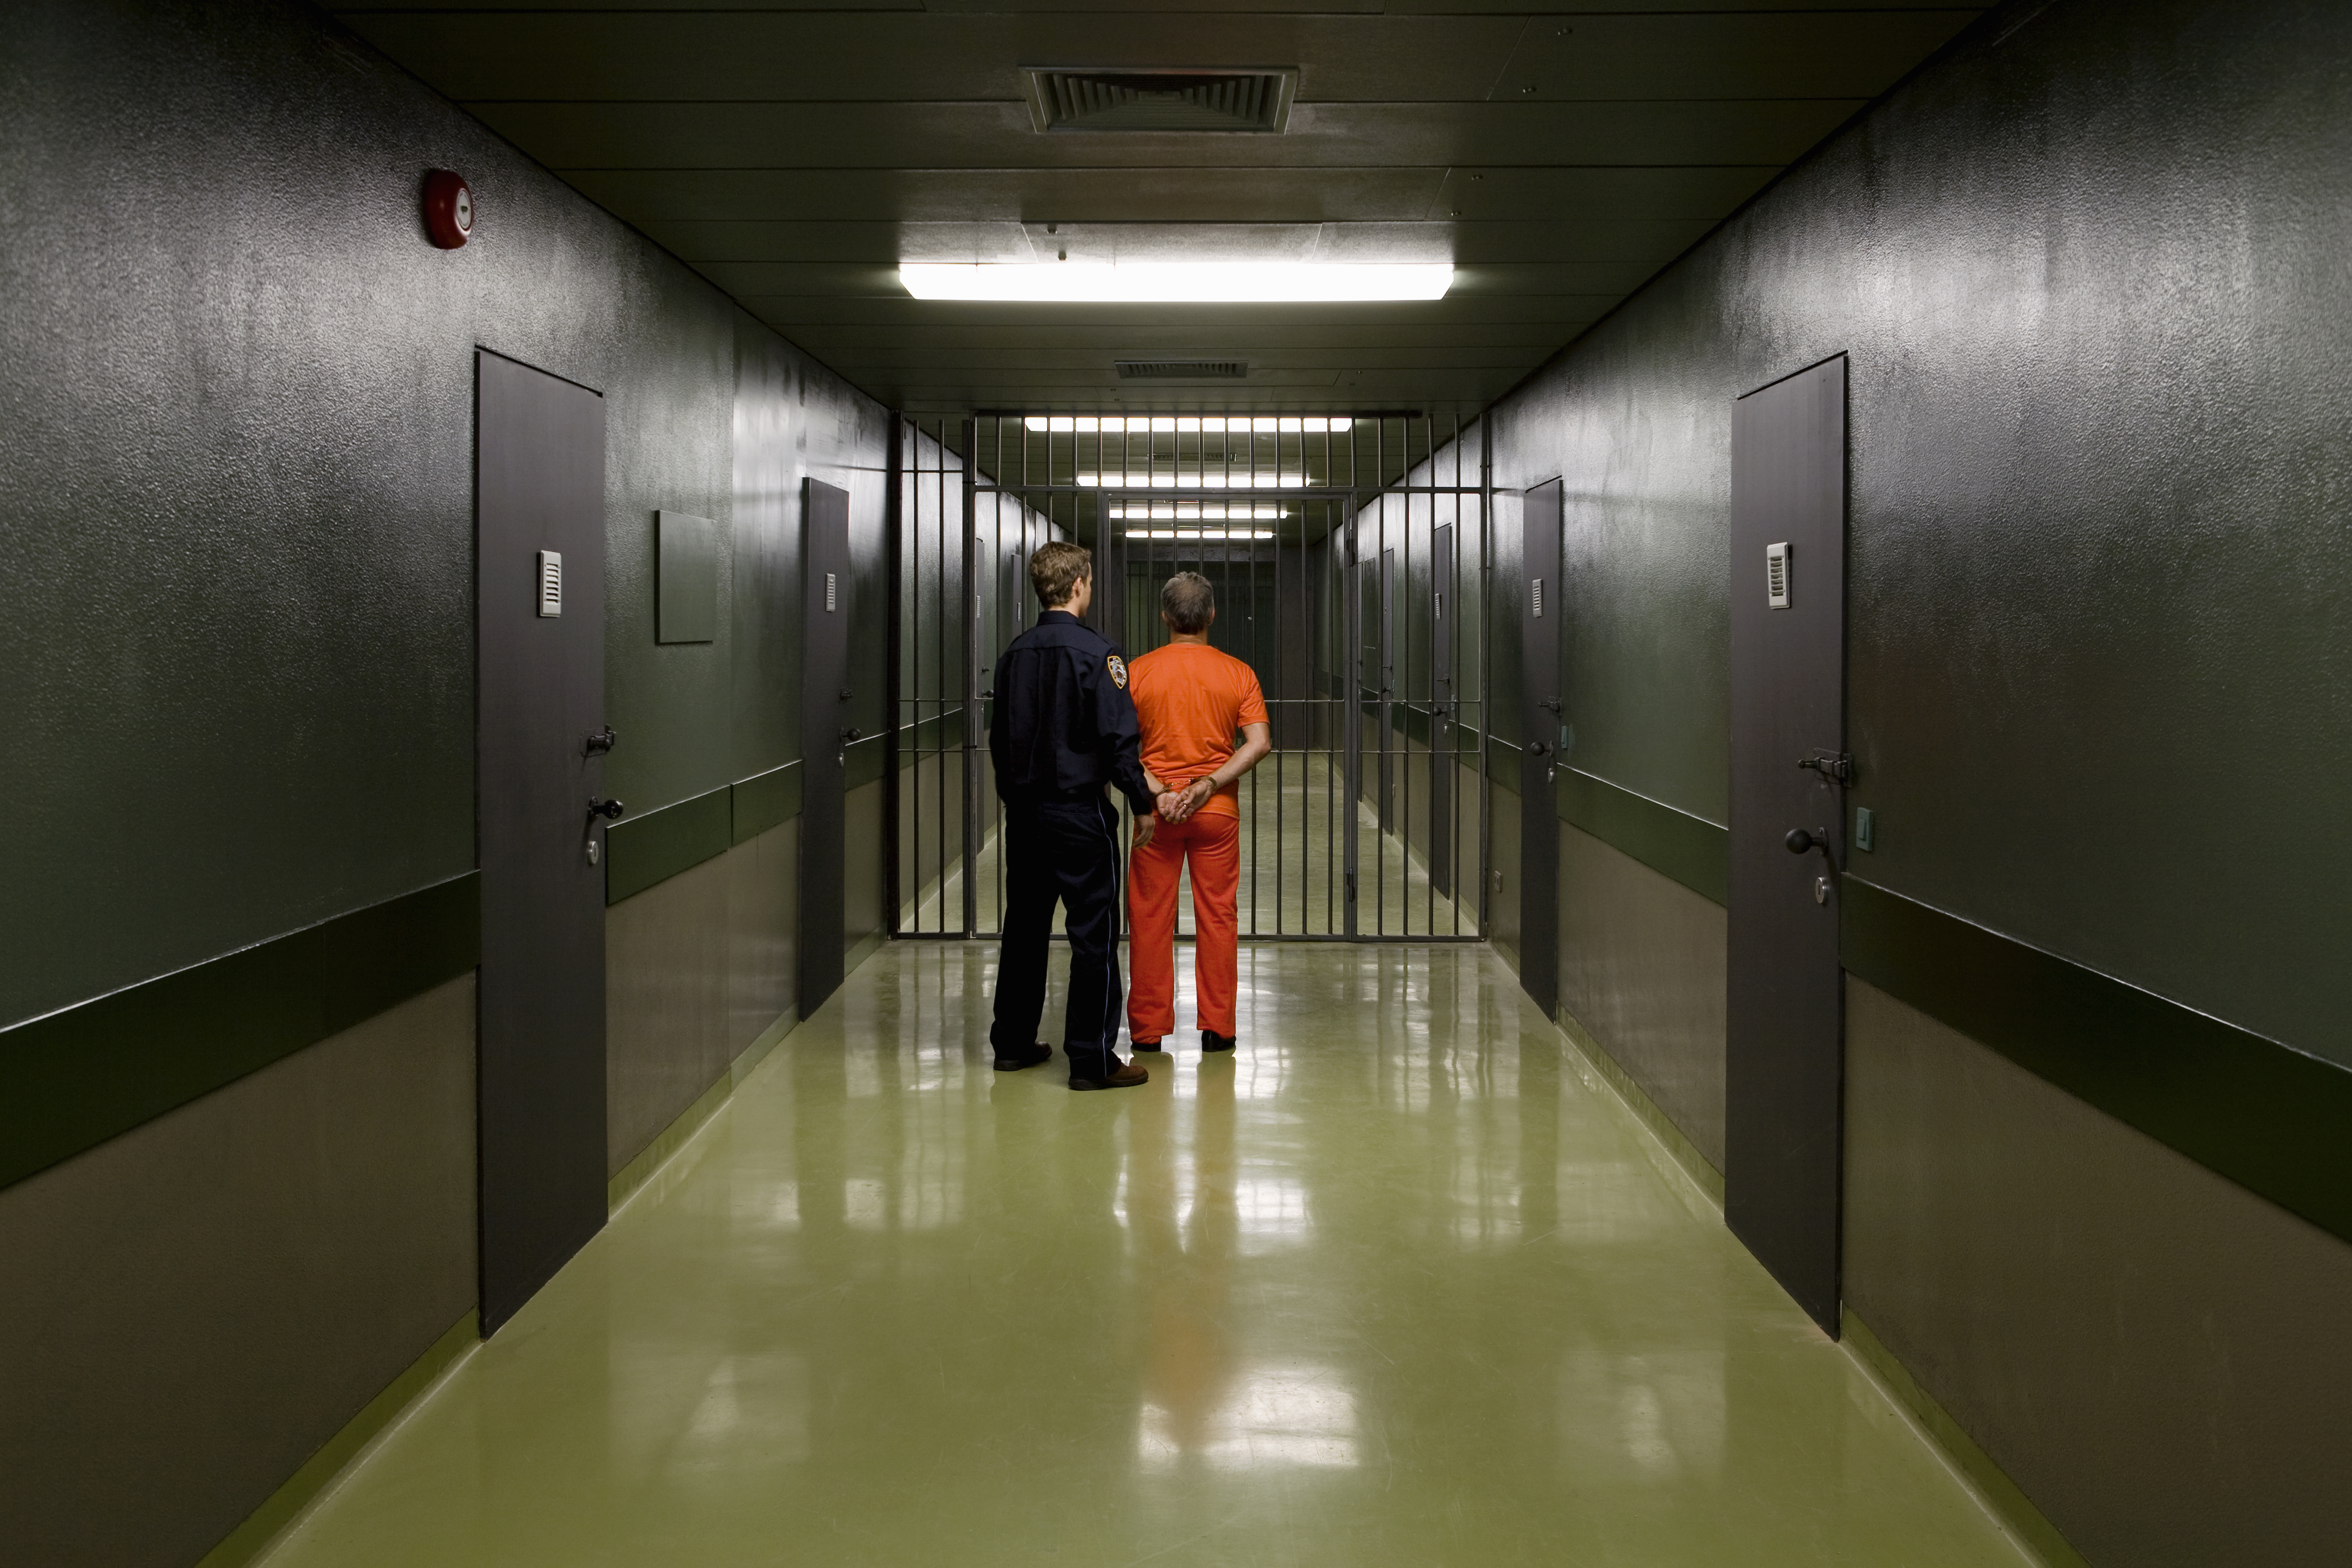 Un gardien de prison conduisant un prisonnier | Source : Getty Images